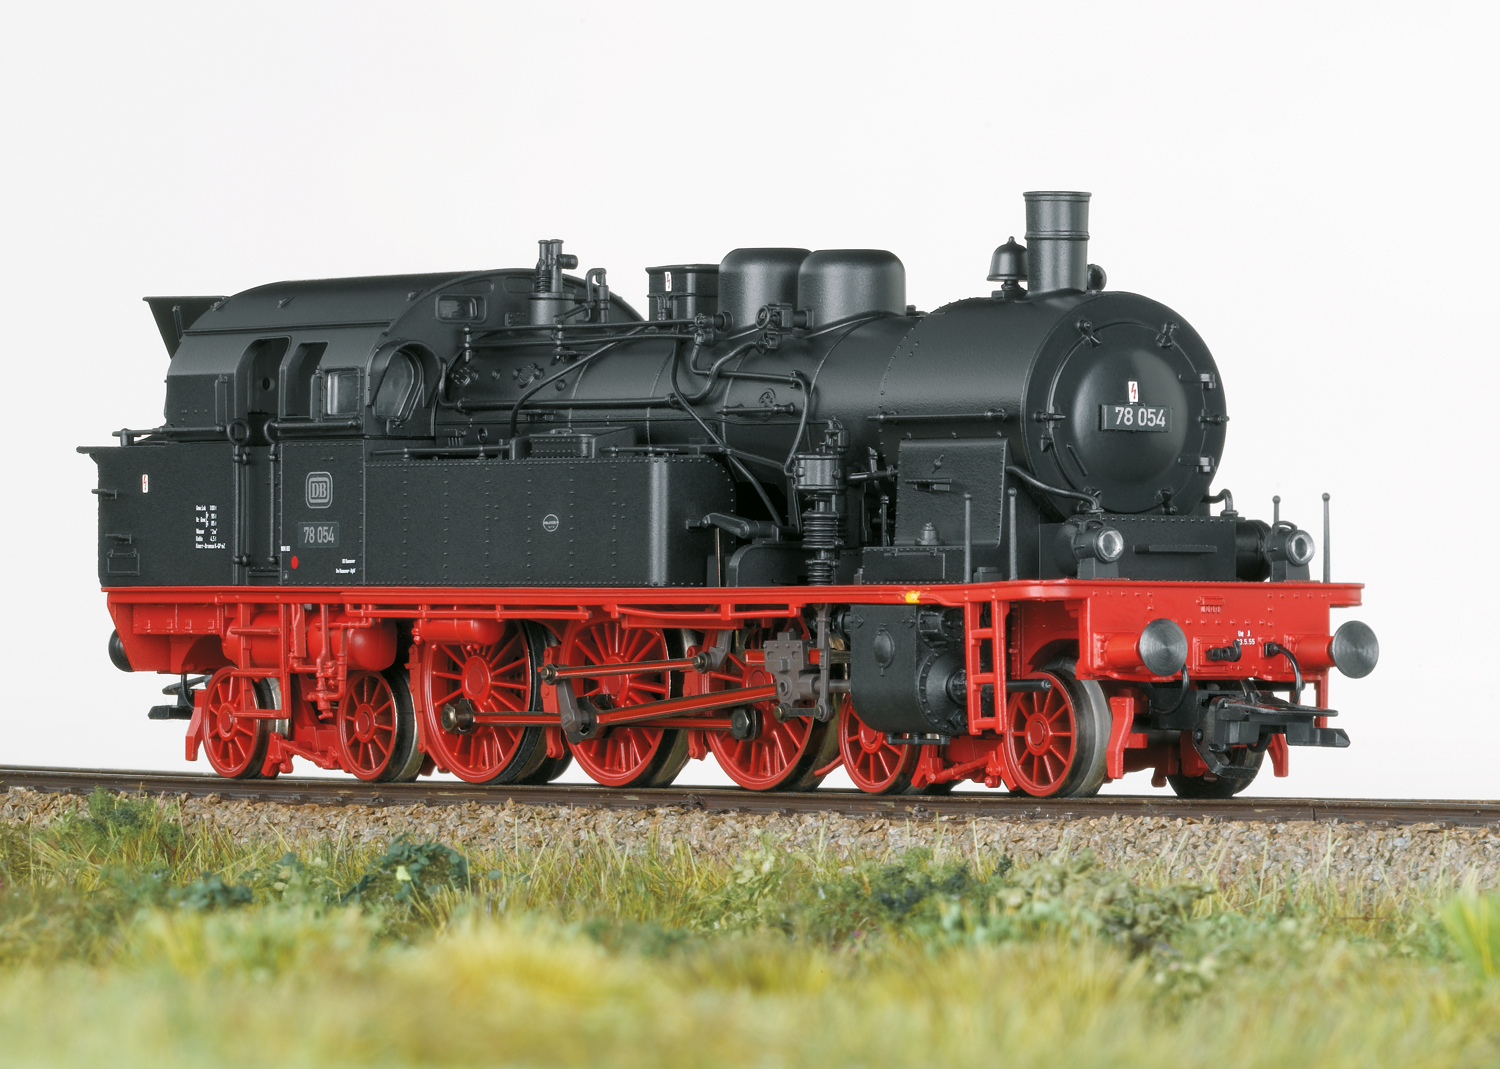 TRIX 22991 <br/>Dampflokomotive Baureihe 78